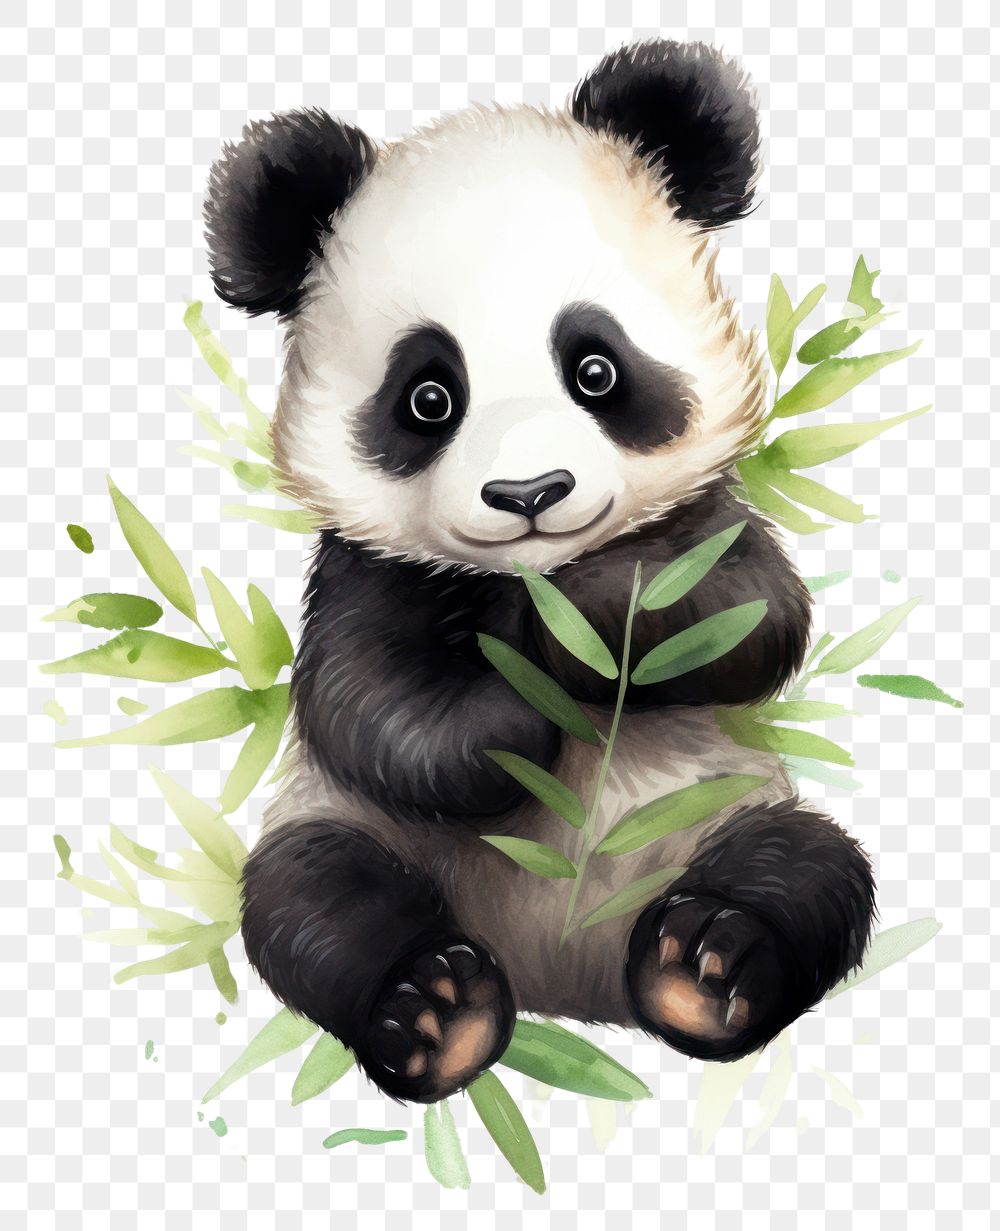 PNG Watercolor of panda wildlife animal mammal.